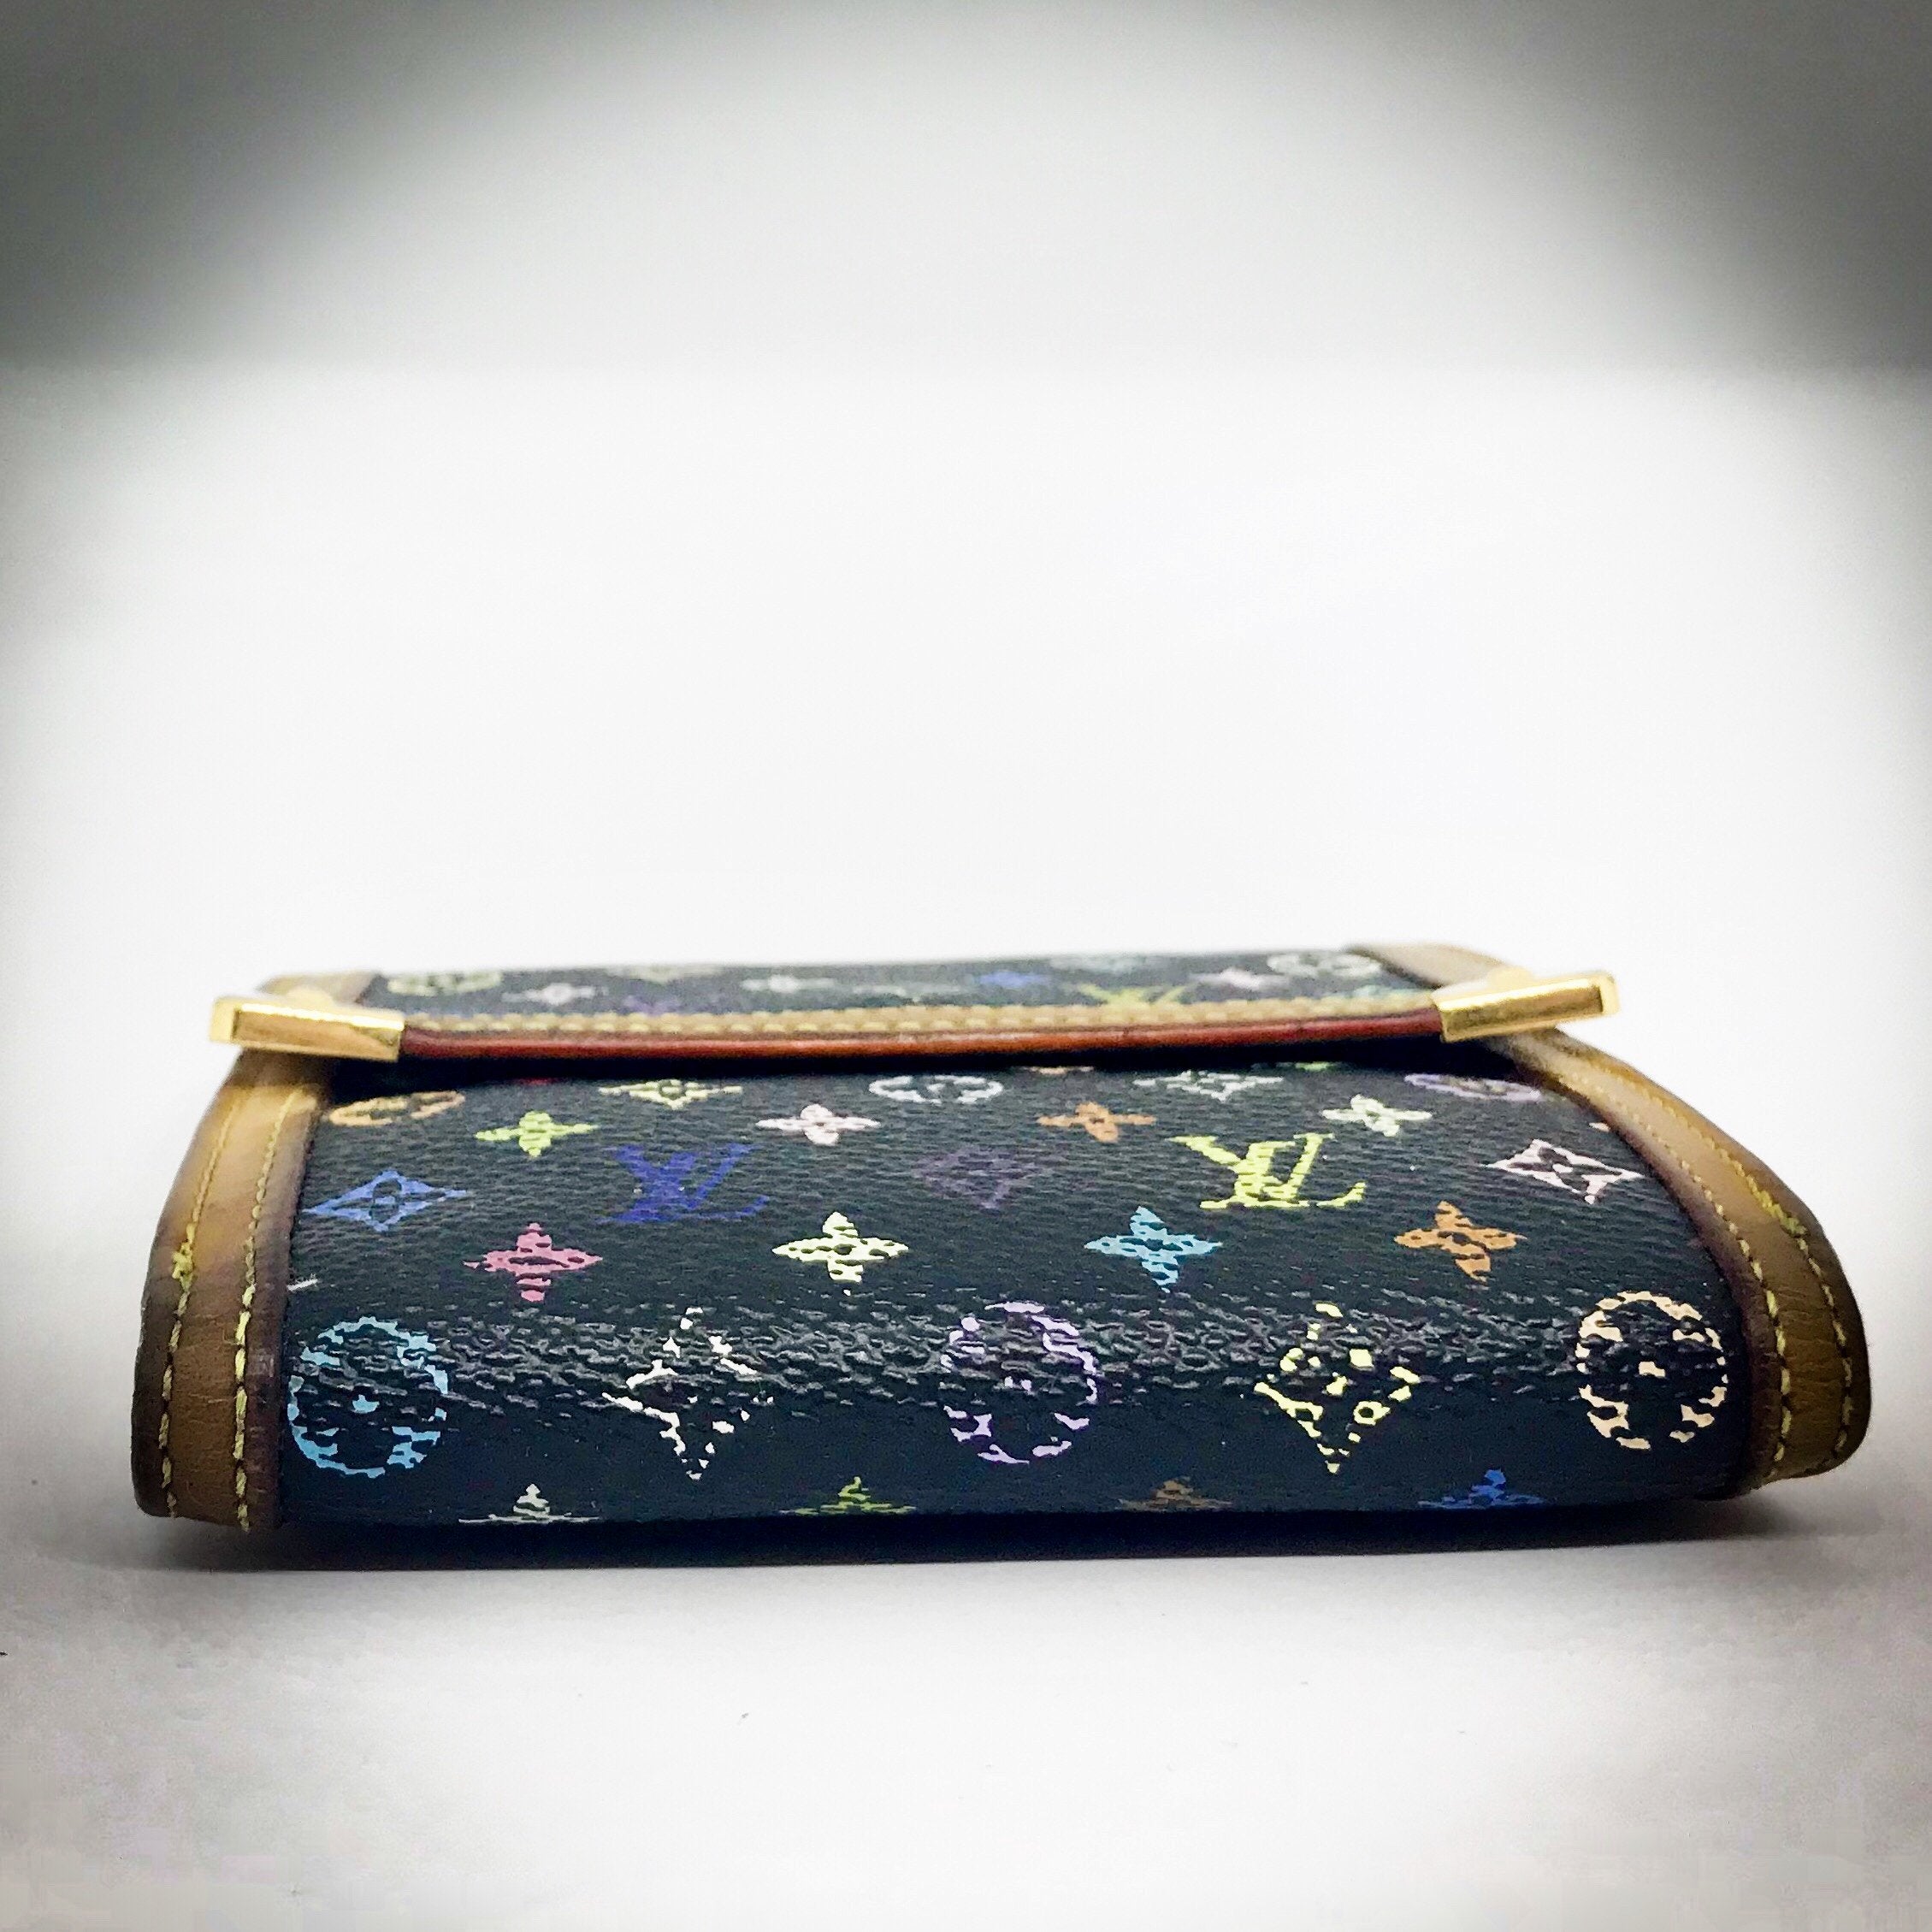 multicolor wallet louis vuittons handbags